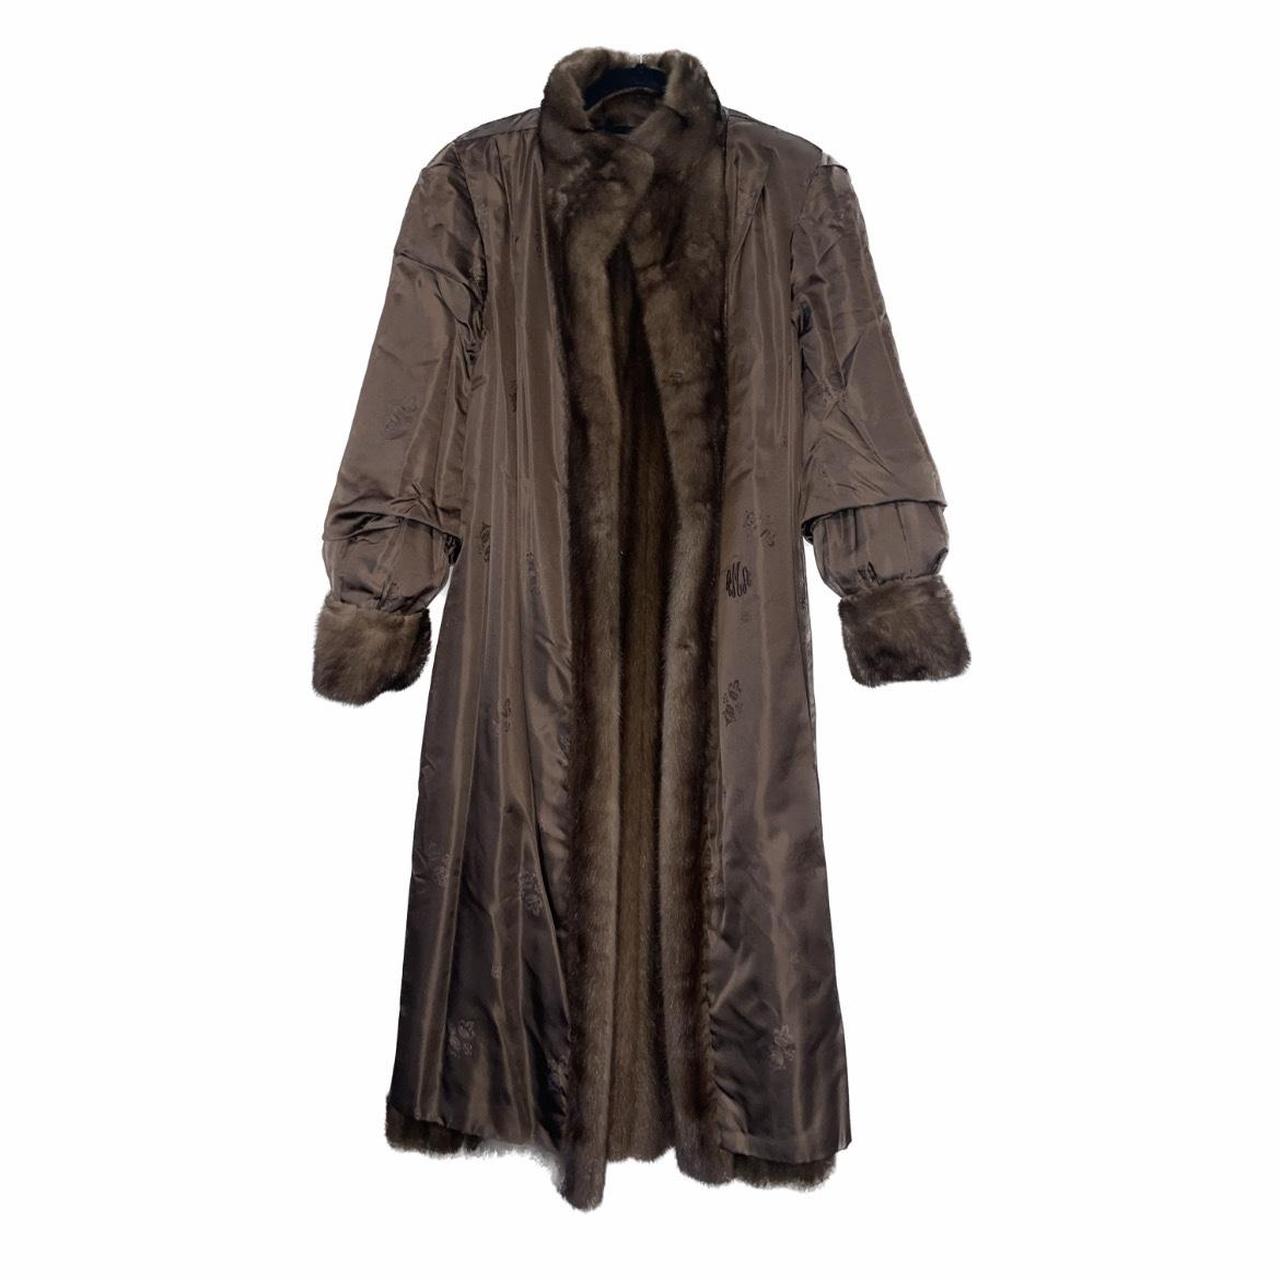 Gartenhaus Mink Fur Coat - Material: Mink - Size:... - Depop